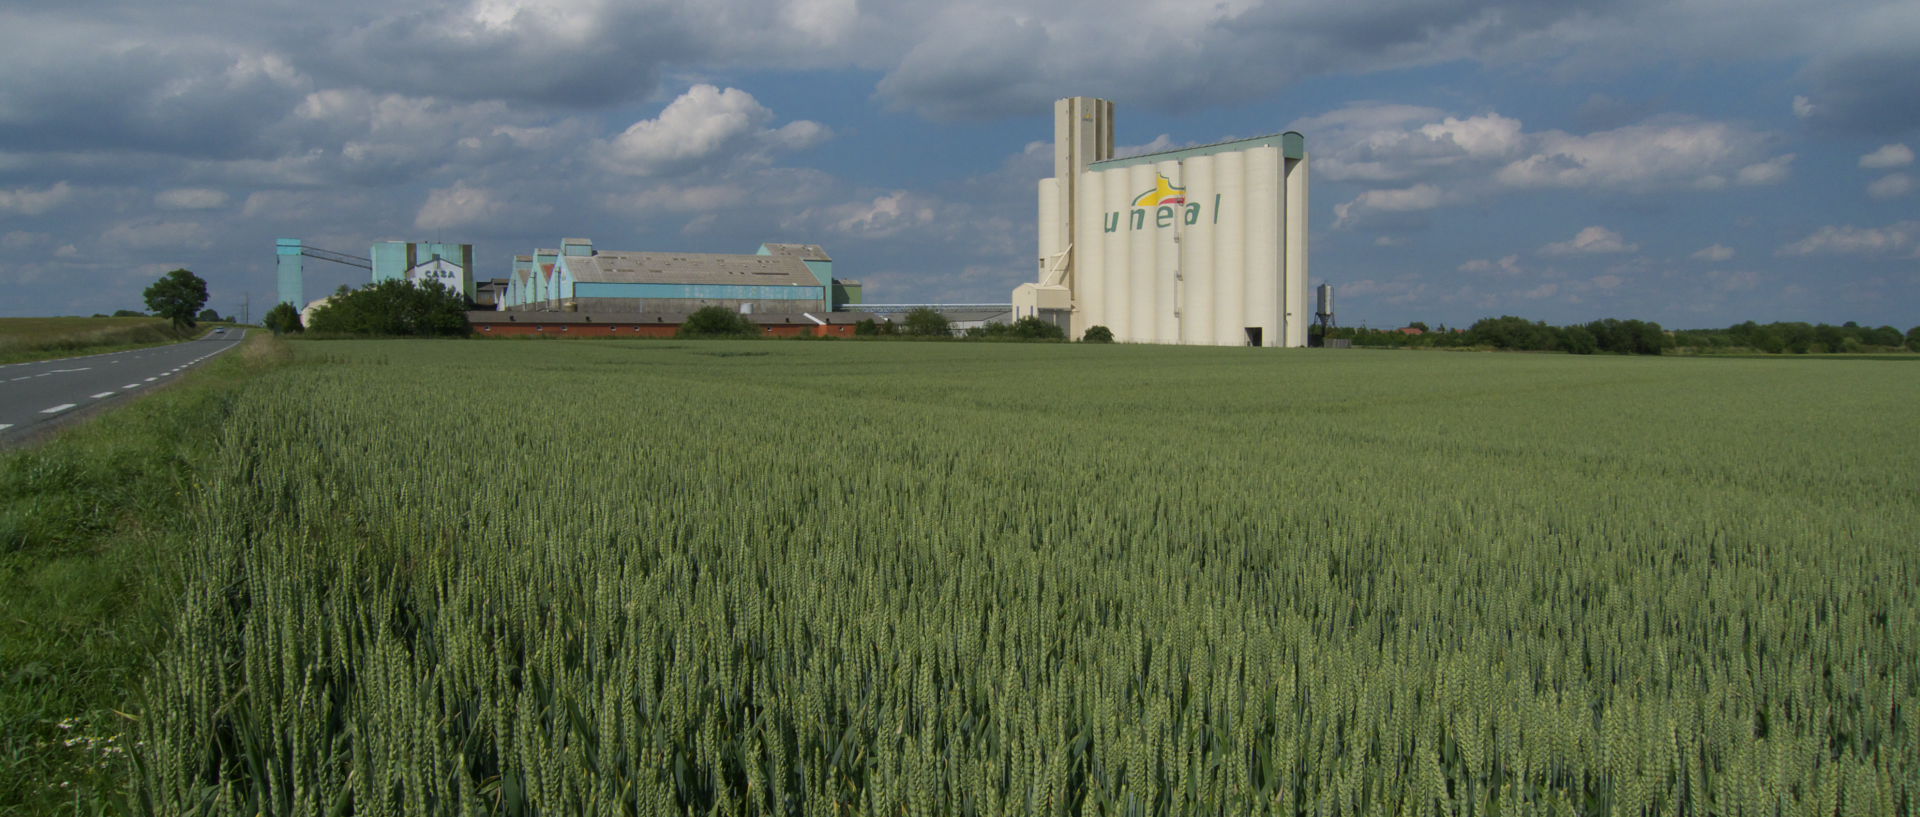 Photo de paysage industriel, Unéal, Mercatel, Pas de Calais.